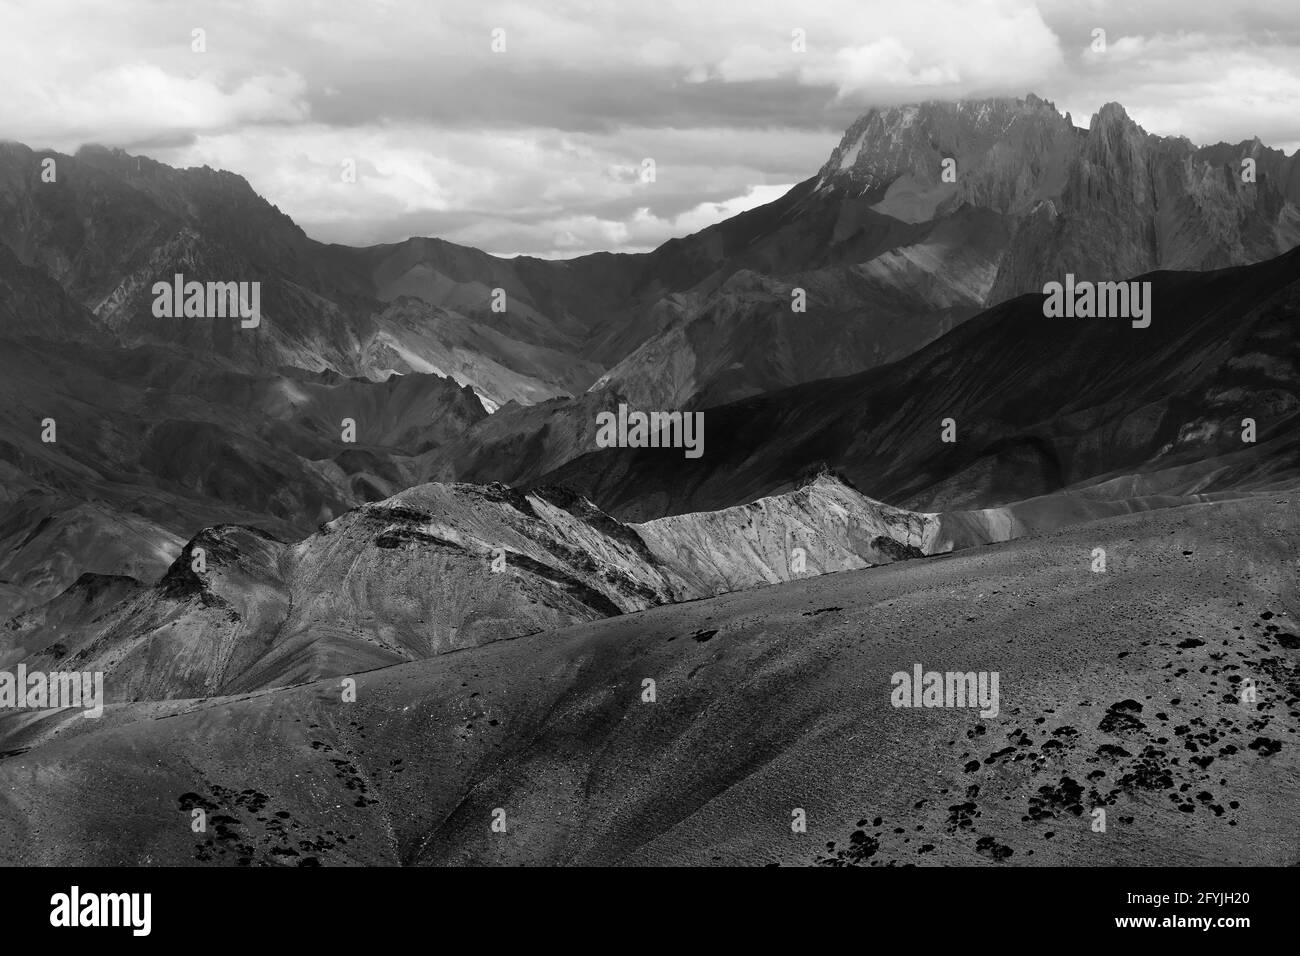 Felsen von Moonland, Landschaft Leh, Jammu Kashmir, Indien. Das Moonland, Teil des Himalaya-Gebirges, ist berühmt für seine Felsformation und Textur. Stockfoto